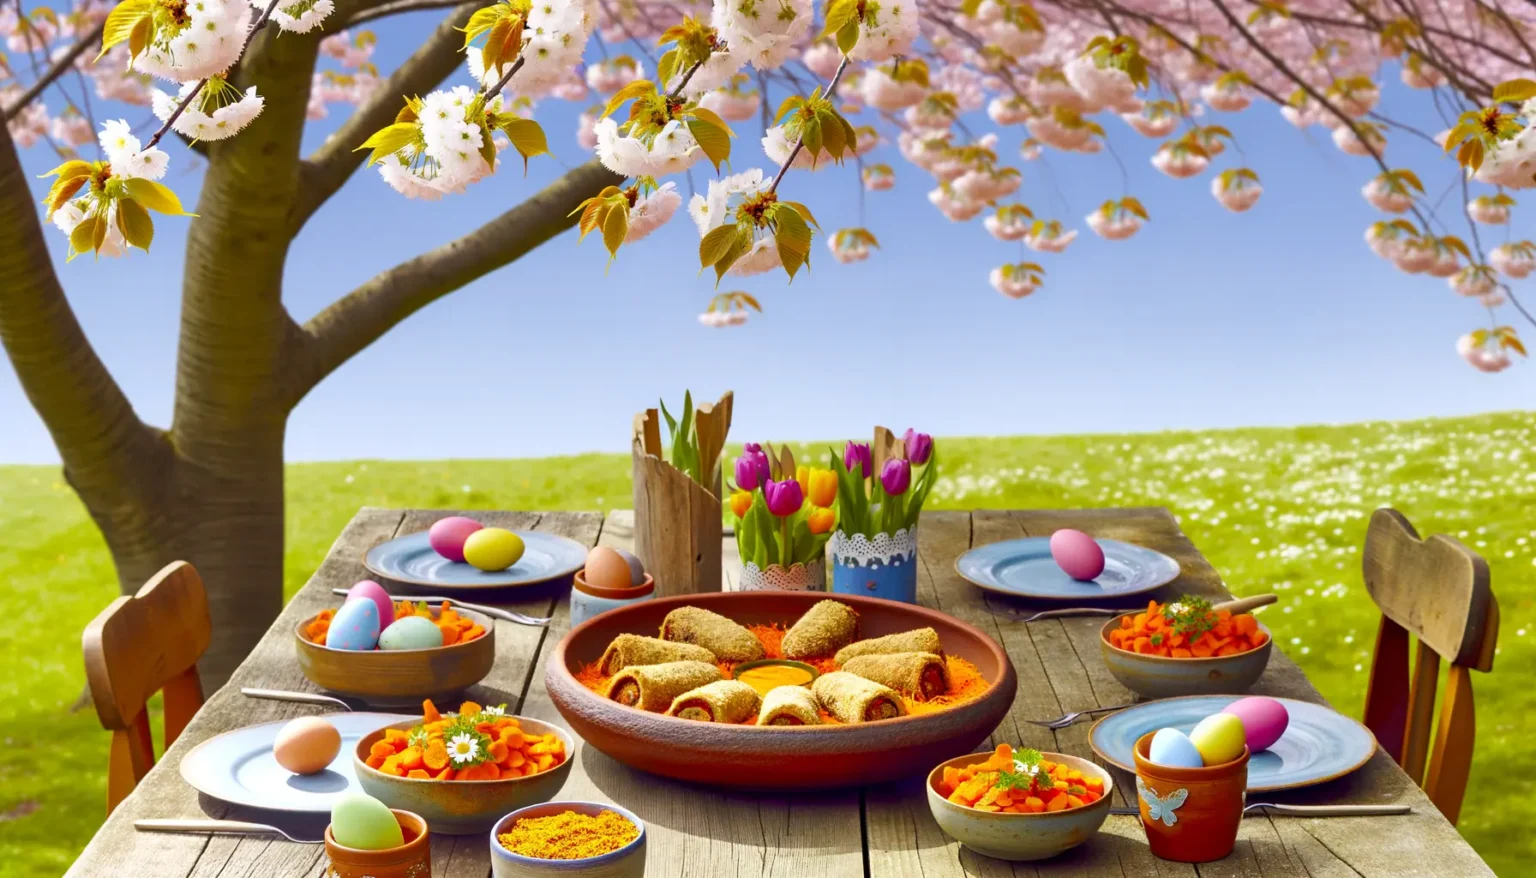 Ein frühlingshaft gedeckter Tisch im Freien mit einem Osterfest-Motiv: Bunte Eier und frische Tulpen in einem Korb, verschiedene Schüsseln mit Speisen und weitere Ostereier verteilt auf dem Tisch. Im Hintergrund blüht ein Kirschbaum in voller Pracht unter einem strahlend blauen Himmel mit einer weitläufigen Wiese im Hintergrund.